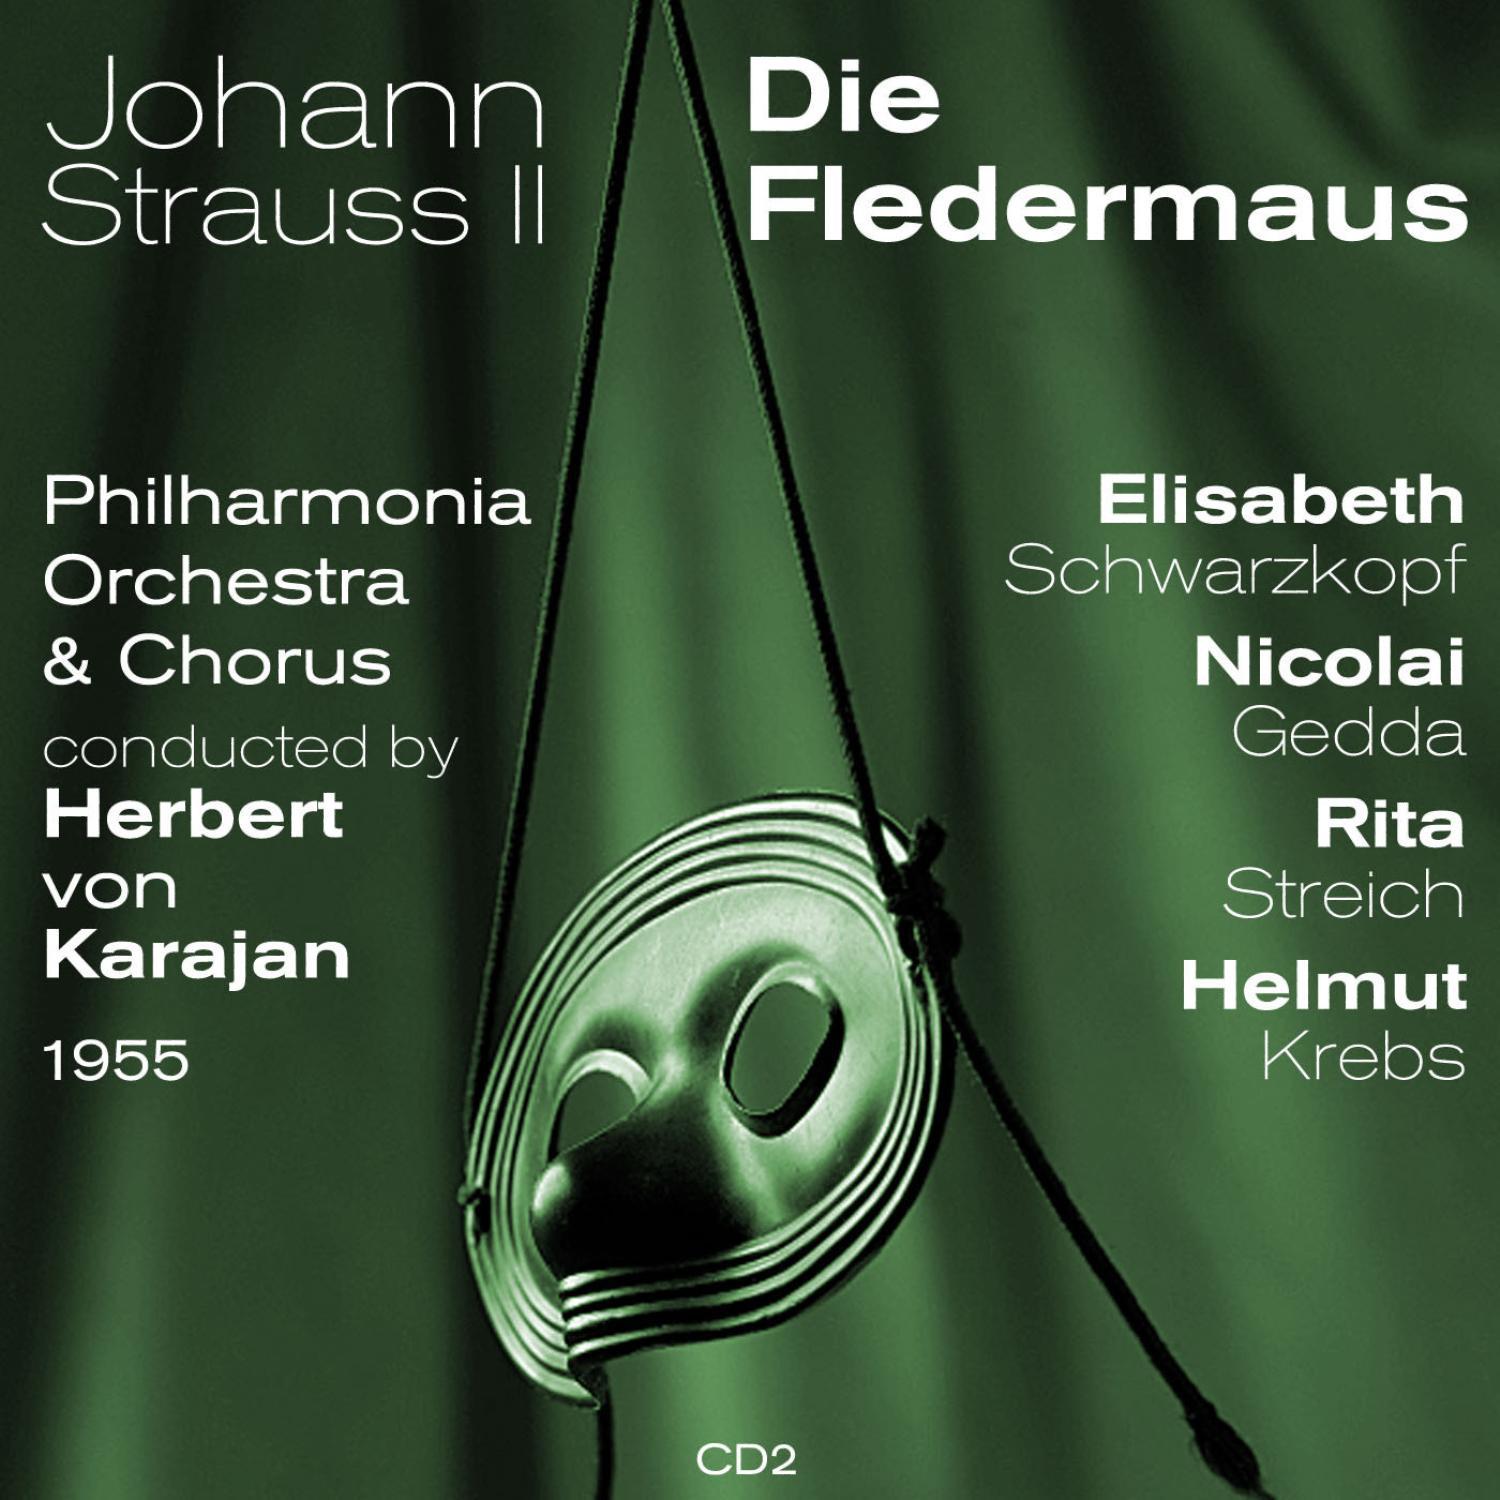 Johann Strauss II: Die Fledermaus, Act III: Da Sie alles wissen nun